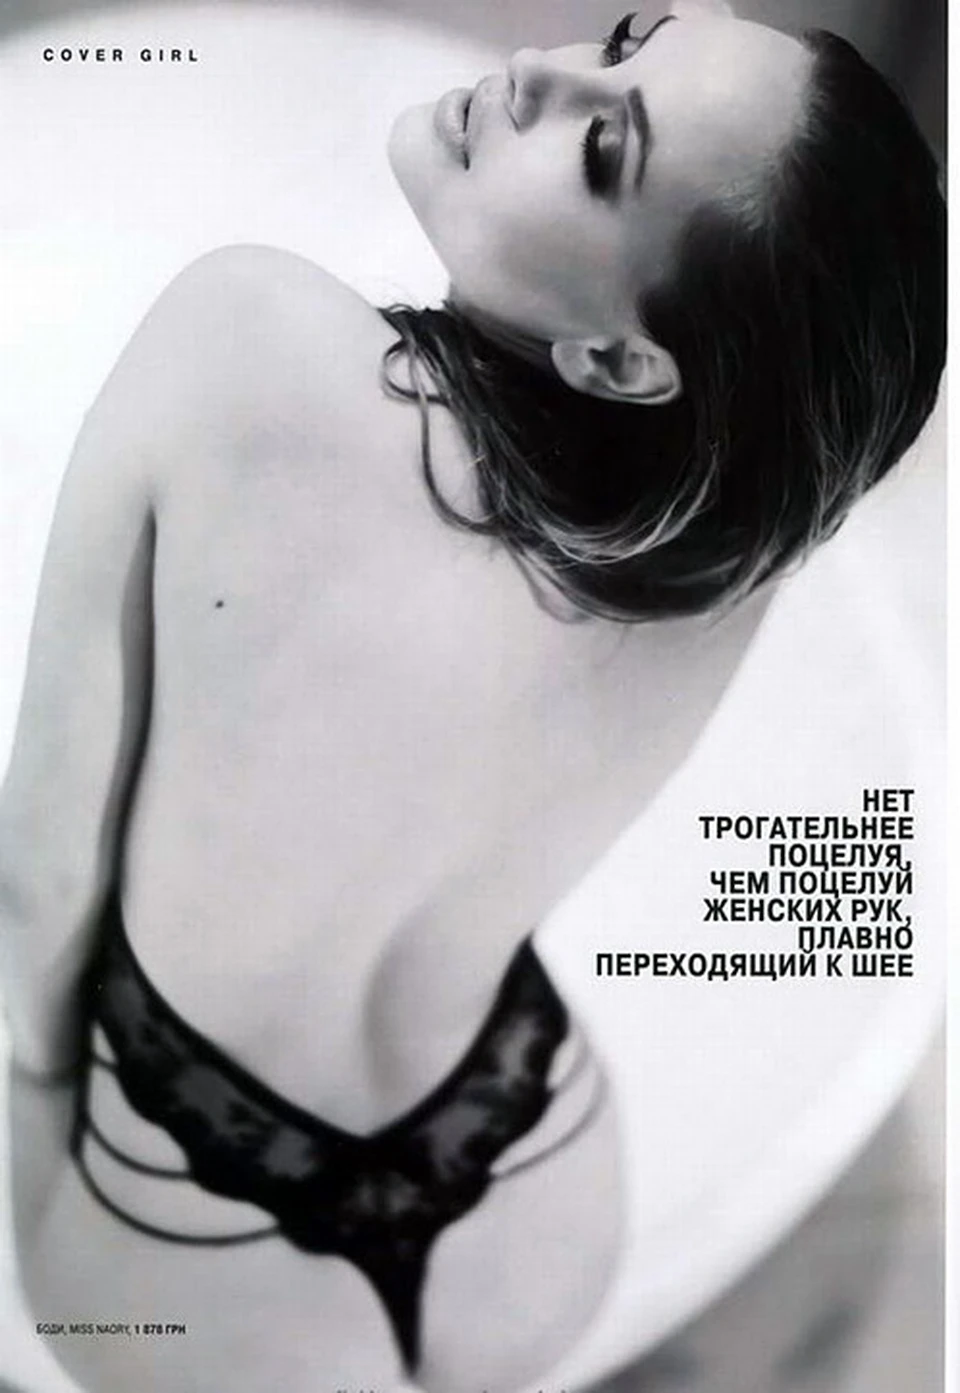 Анджелина Джоли раздевается для журнала (15 фото эротики)